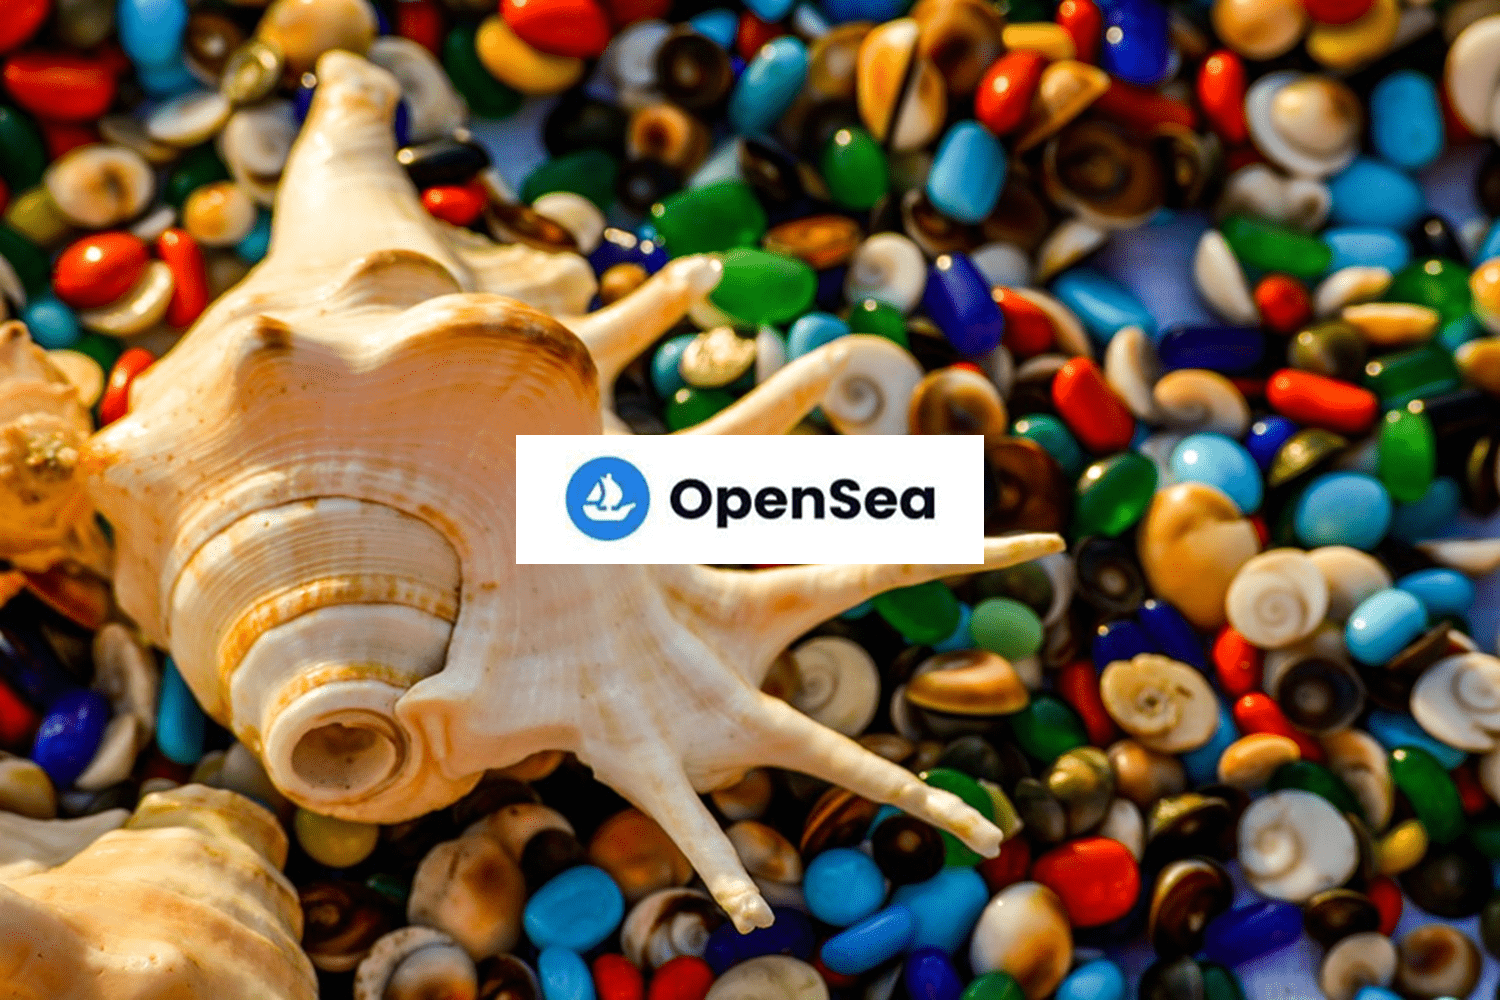 OpenSeaでの買い方を画像で説明します。